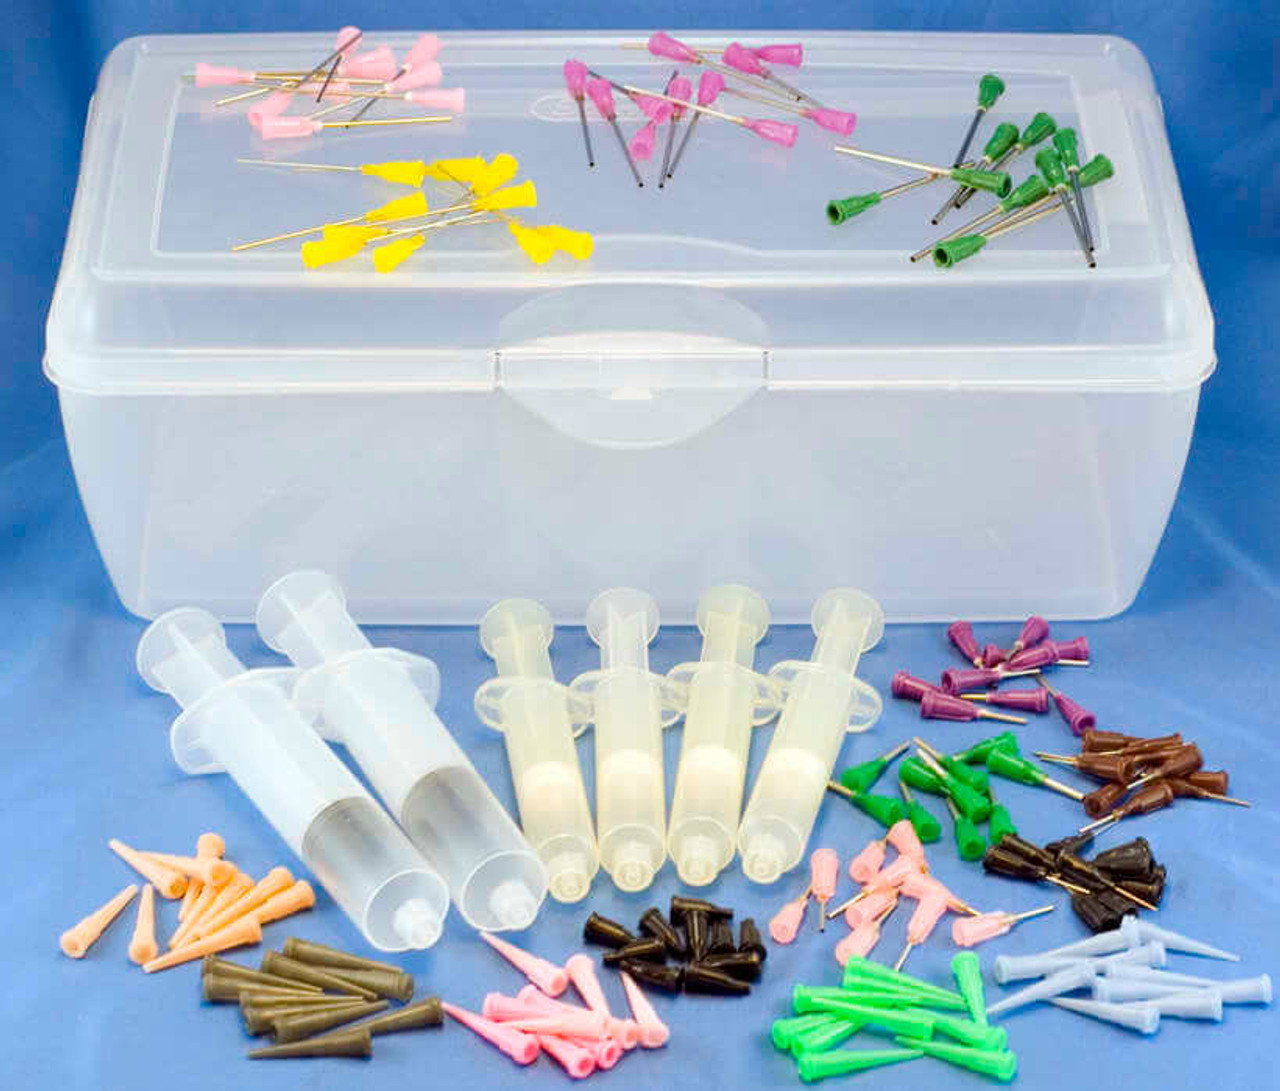 Syringe and Dispensing Needle Assortment Kit